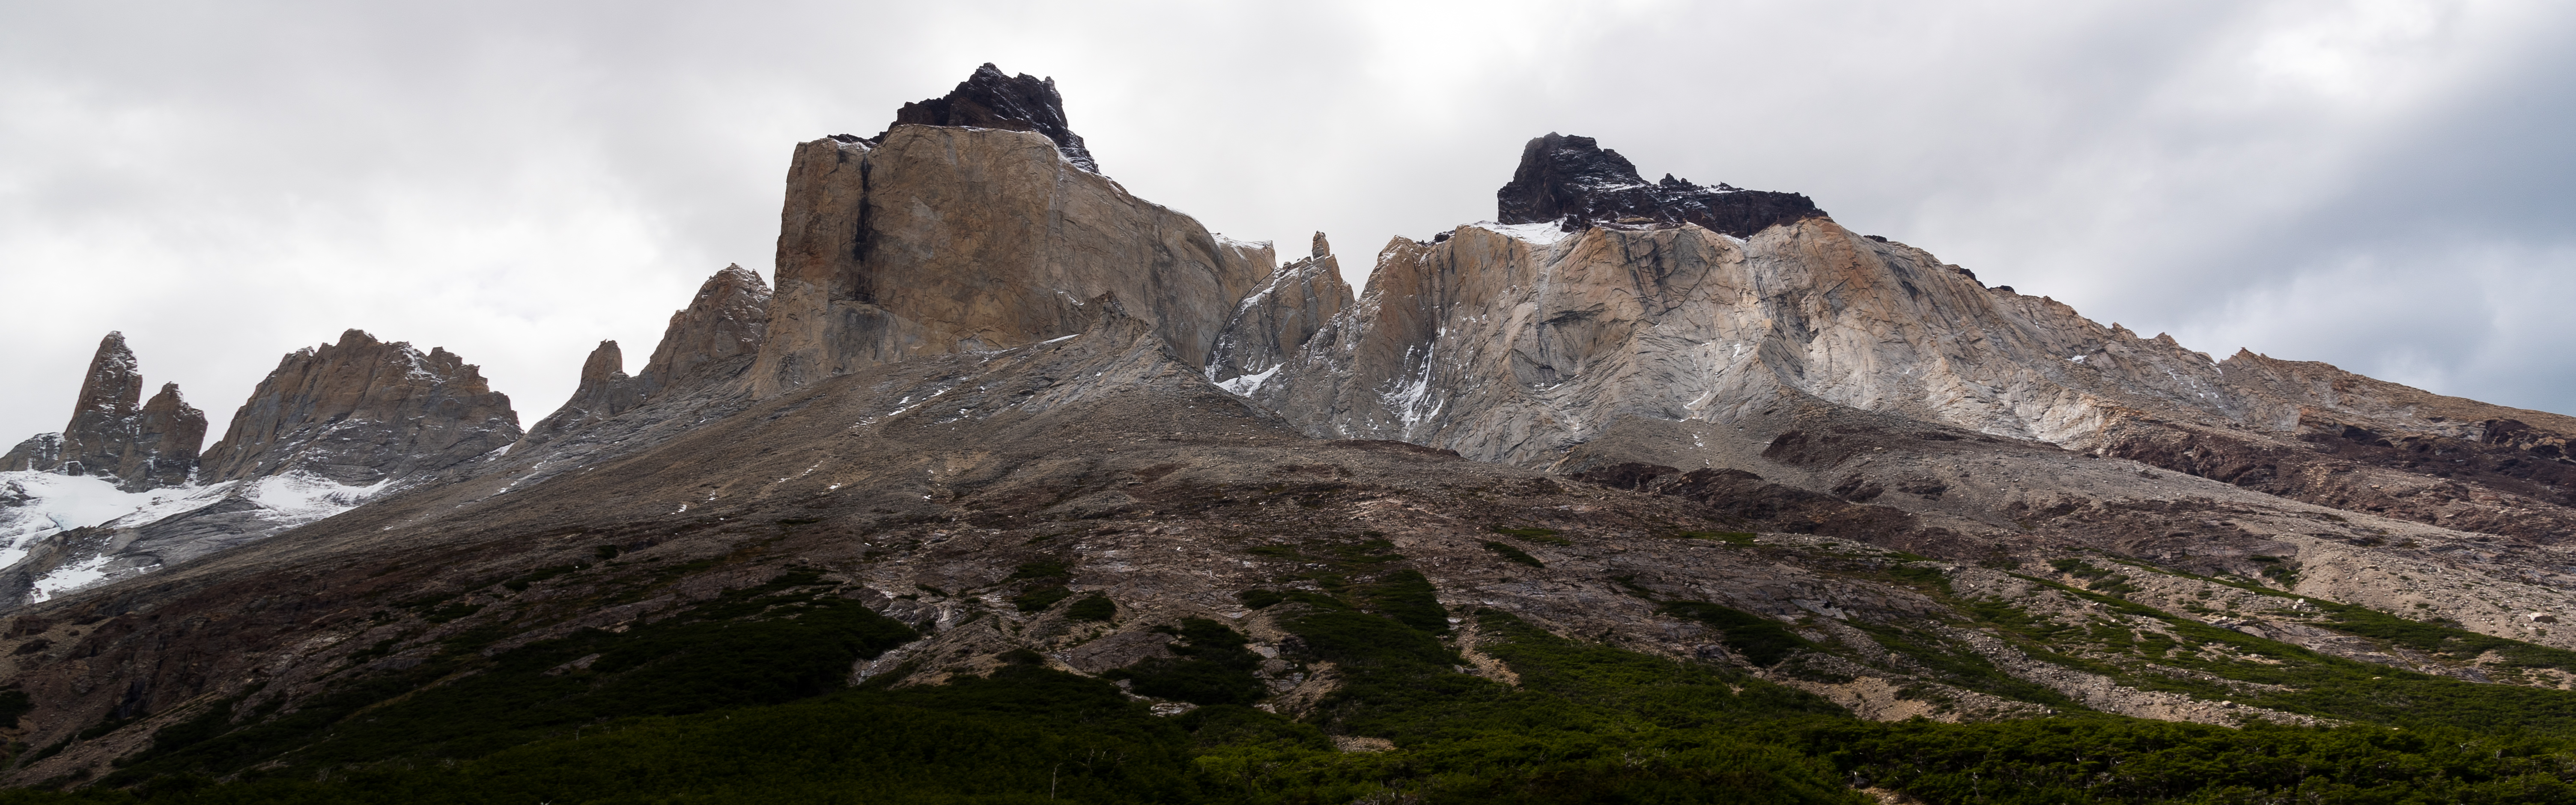 Torres Del Paine W Trek Chile